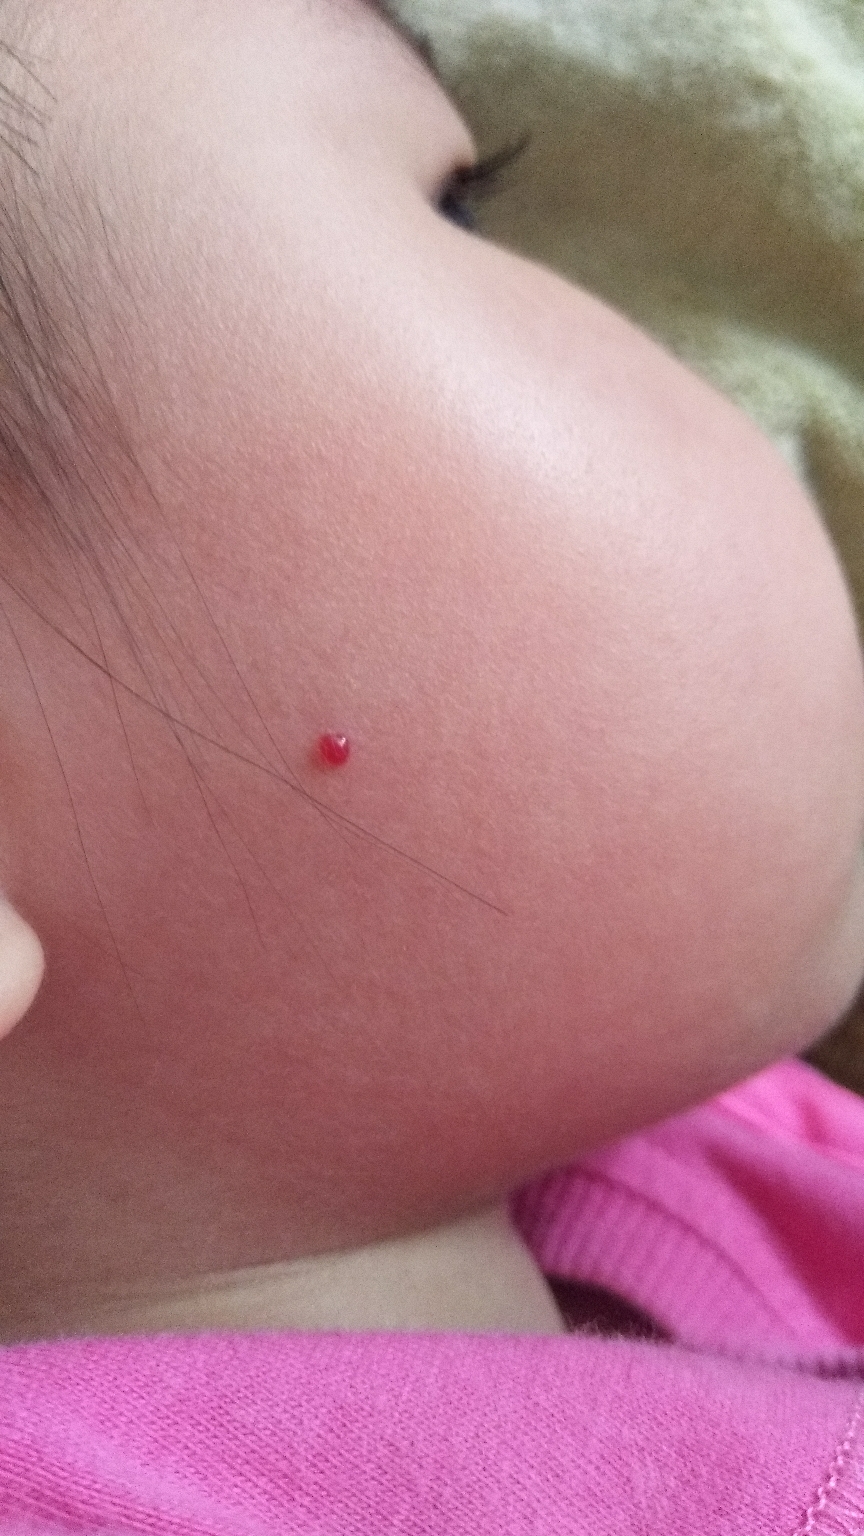 我家宝宝三岁,脸上突然发现一个血点包,人说是血管痣